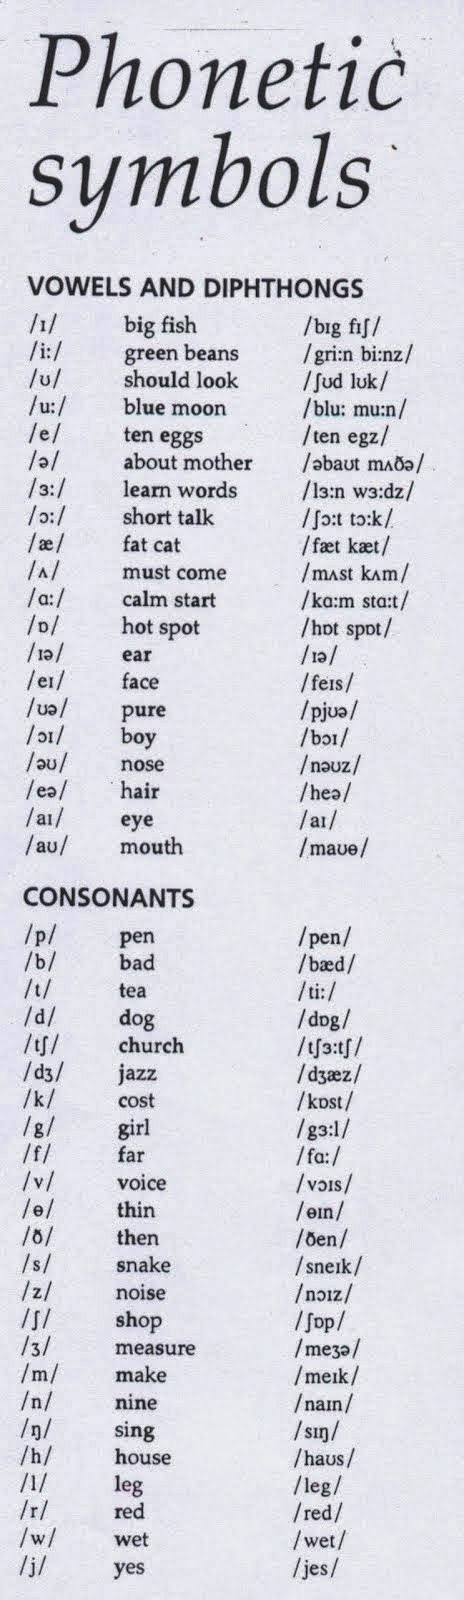 English phonemes